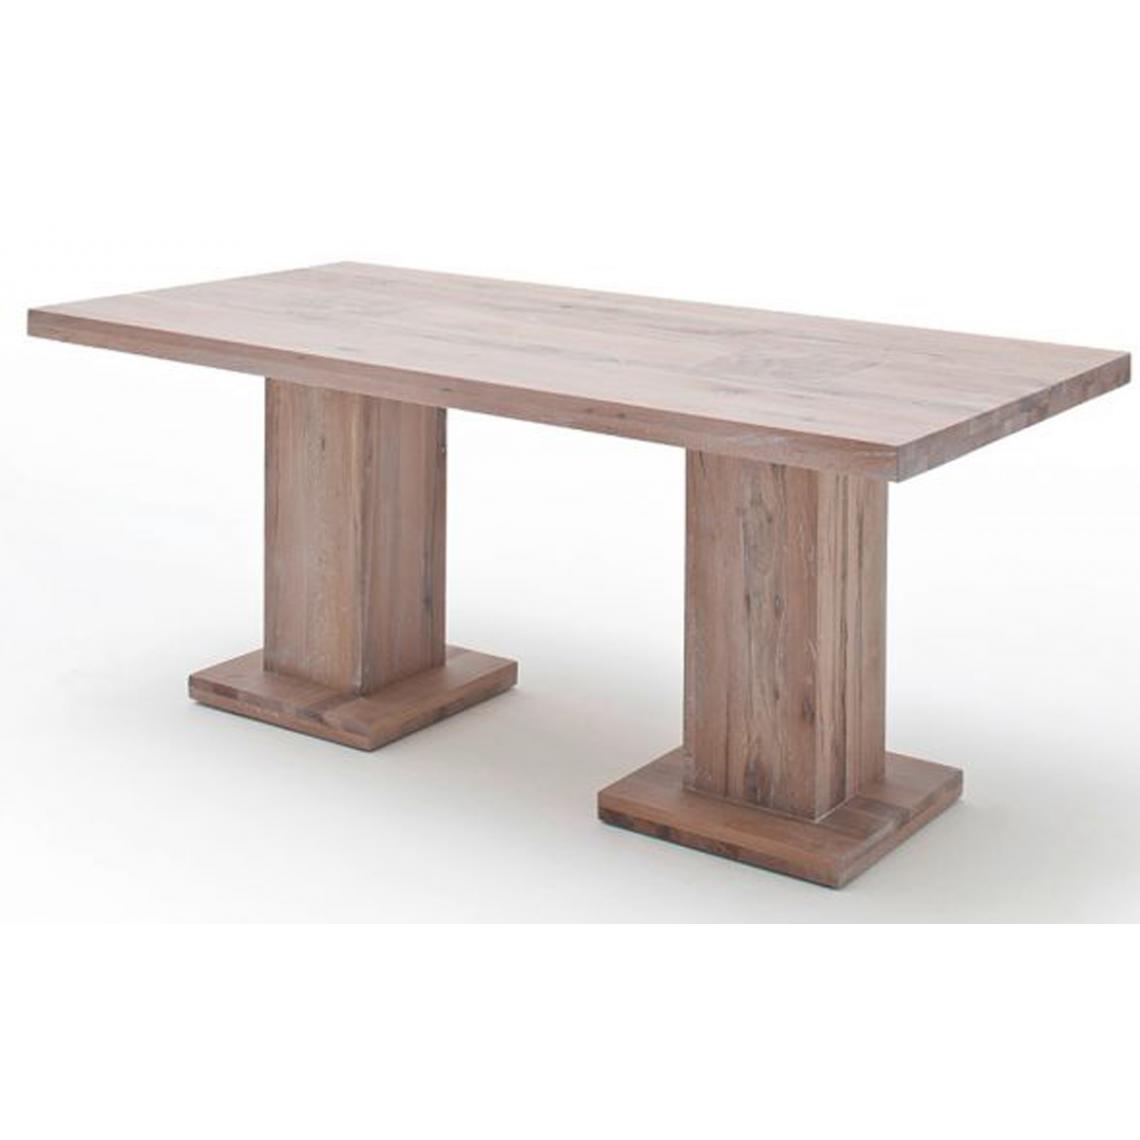 Pegane - Table à manger en chêne chaulé avec 2 colonnes - L.180 x H.76 x P.90 cm -PEGANE- - Tables à manger